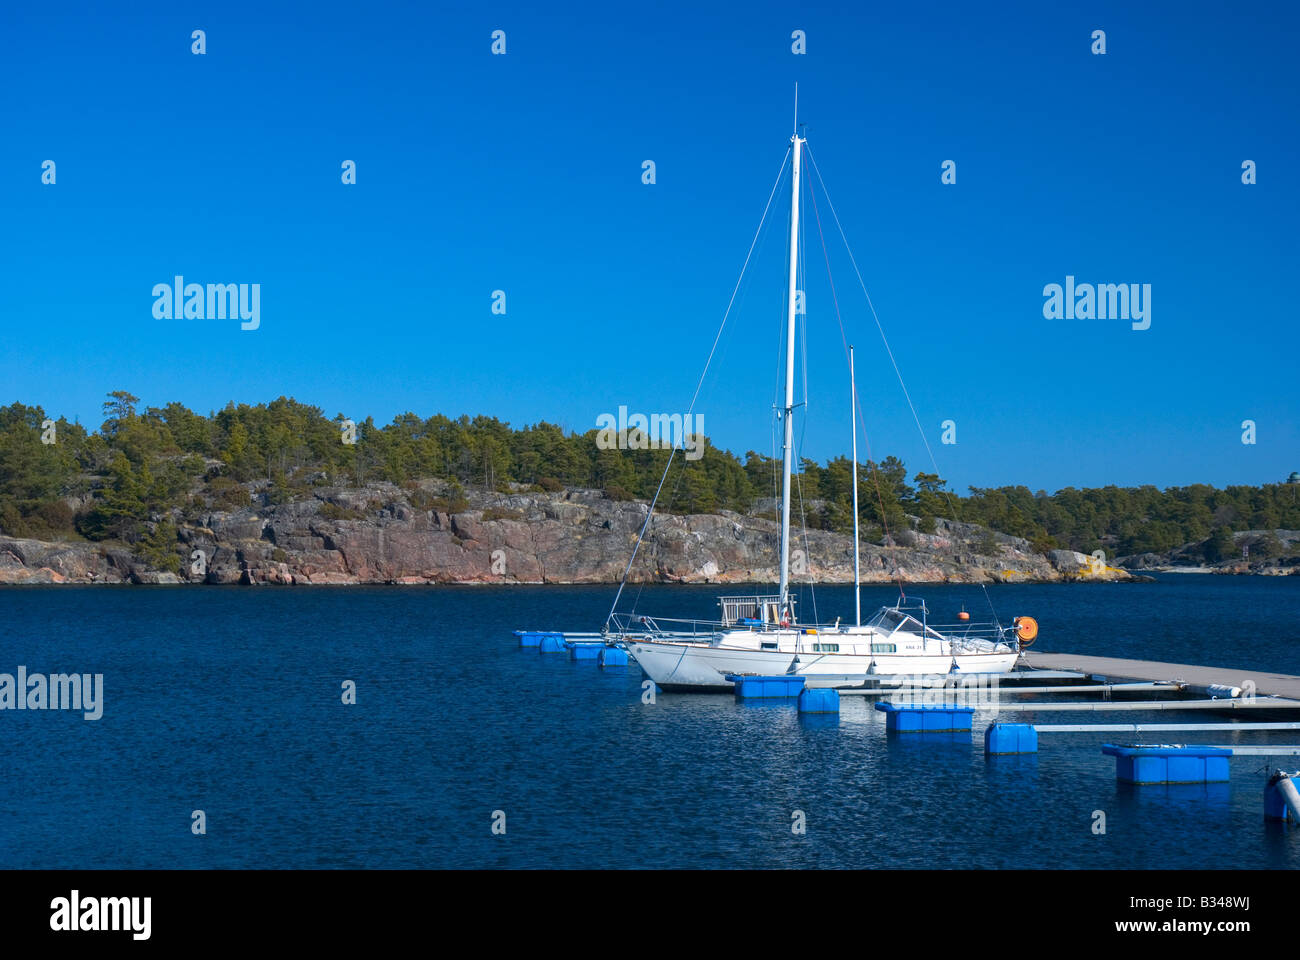 Nebensaison auf Sandhamn (Insel Sandö) in den Schären von Stockholm, Schweden. Insel mit schönen Stränden und idyllischen Umgebung Stockfoto